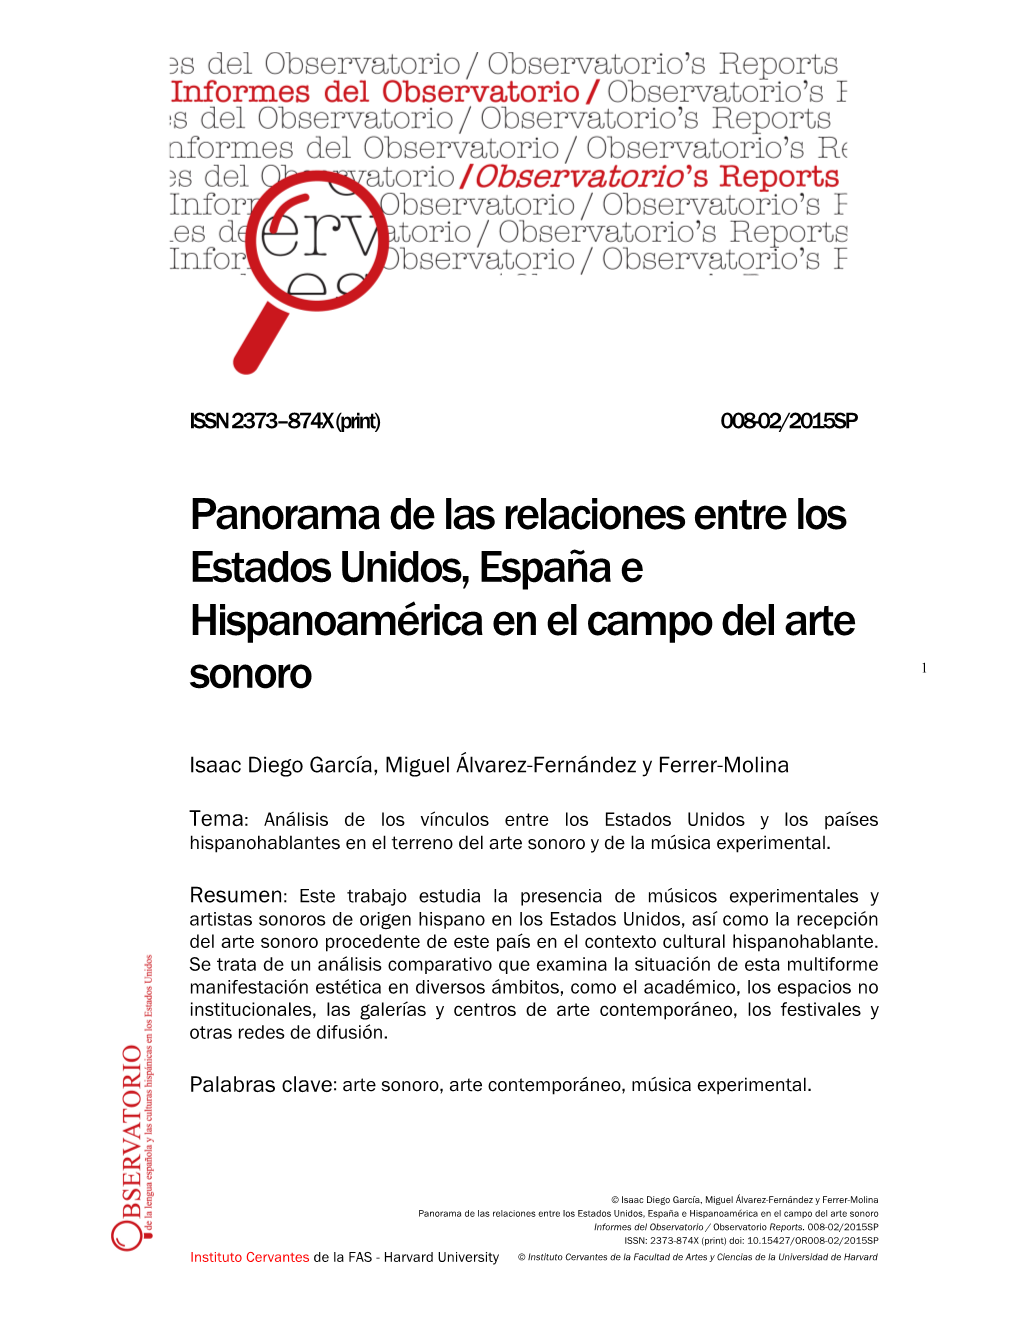 Panorama De Las Relaciones Entre Los Estados Unidos, España E Hispanoamérica En El Campo Del Arte Sonoro 1